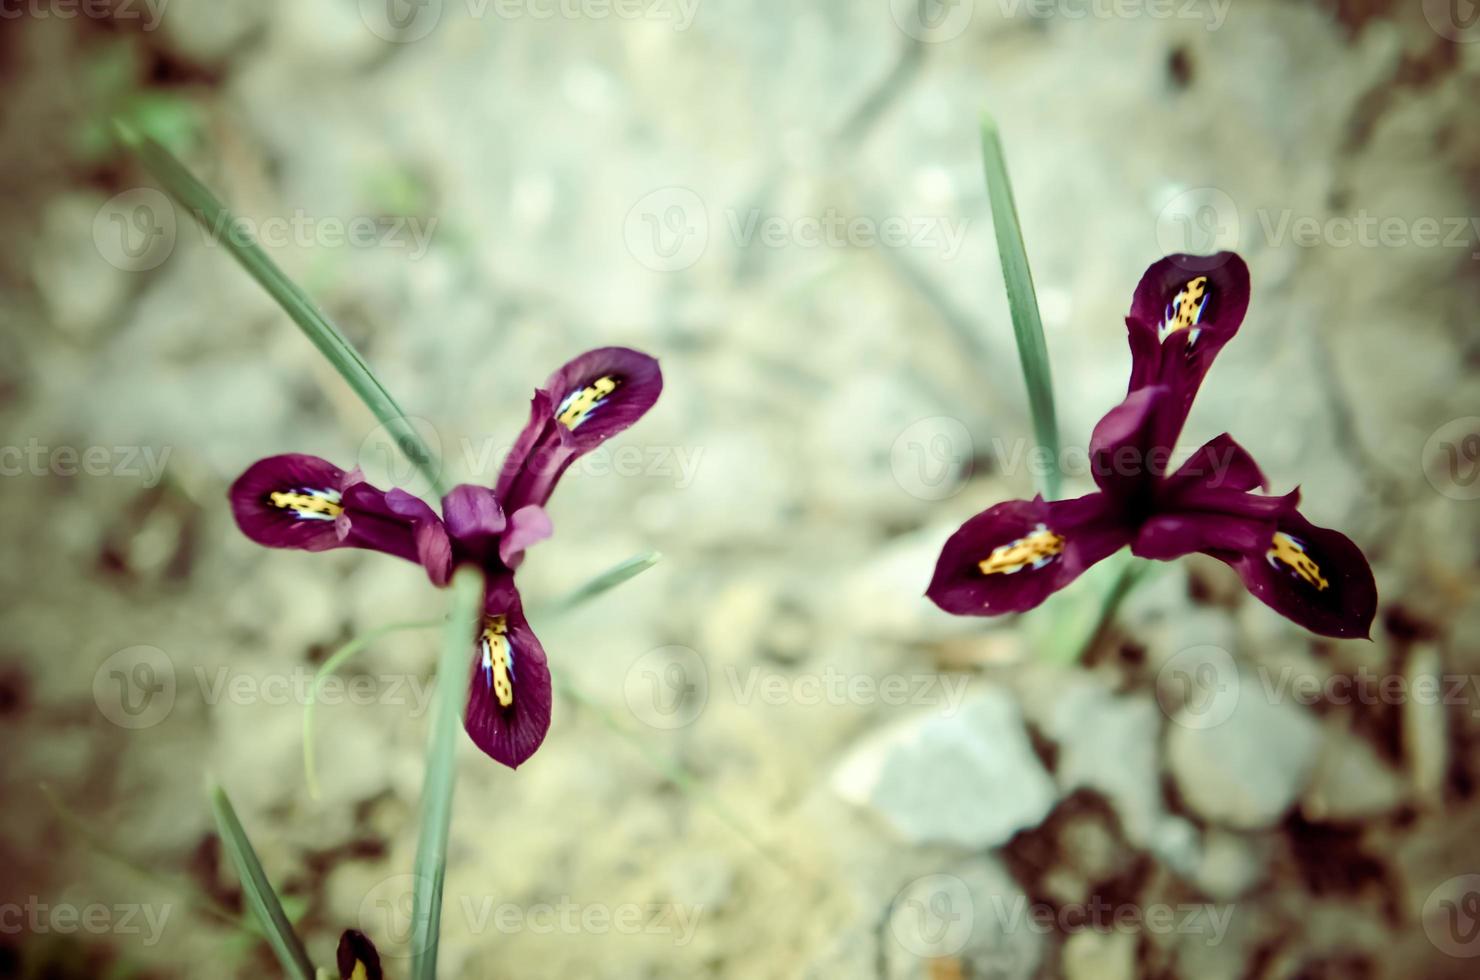 Iris reticulata iridodictyum sobre parterre con poca profundidad de campo. foto